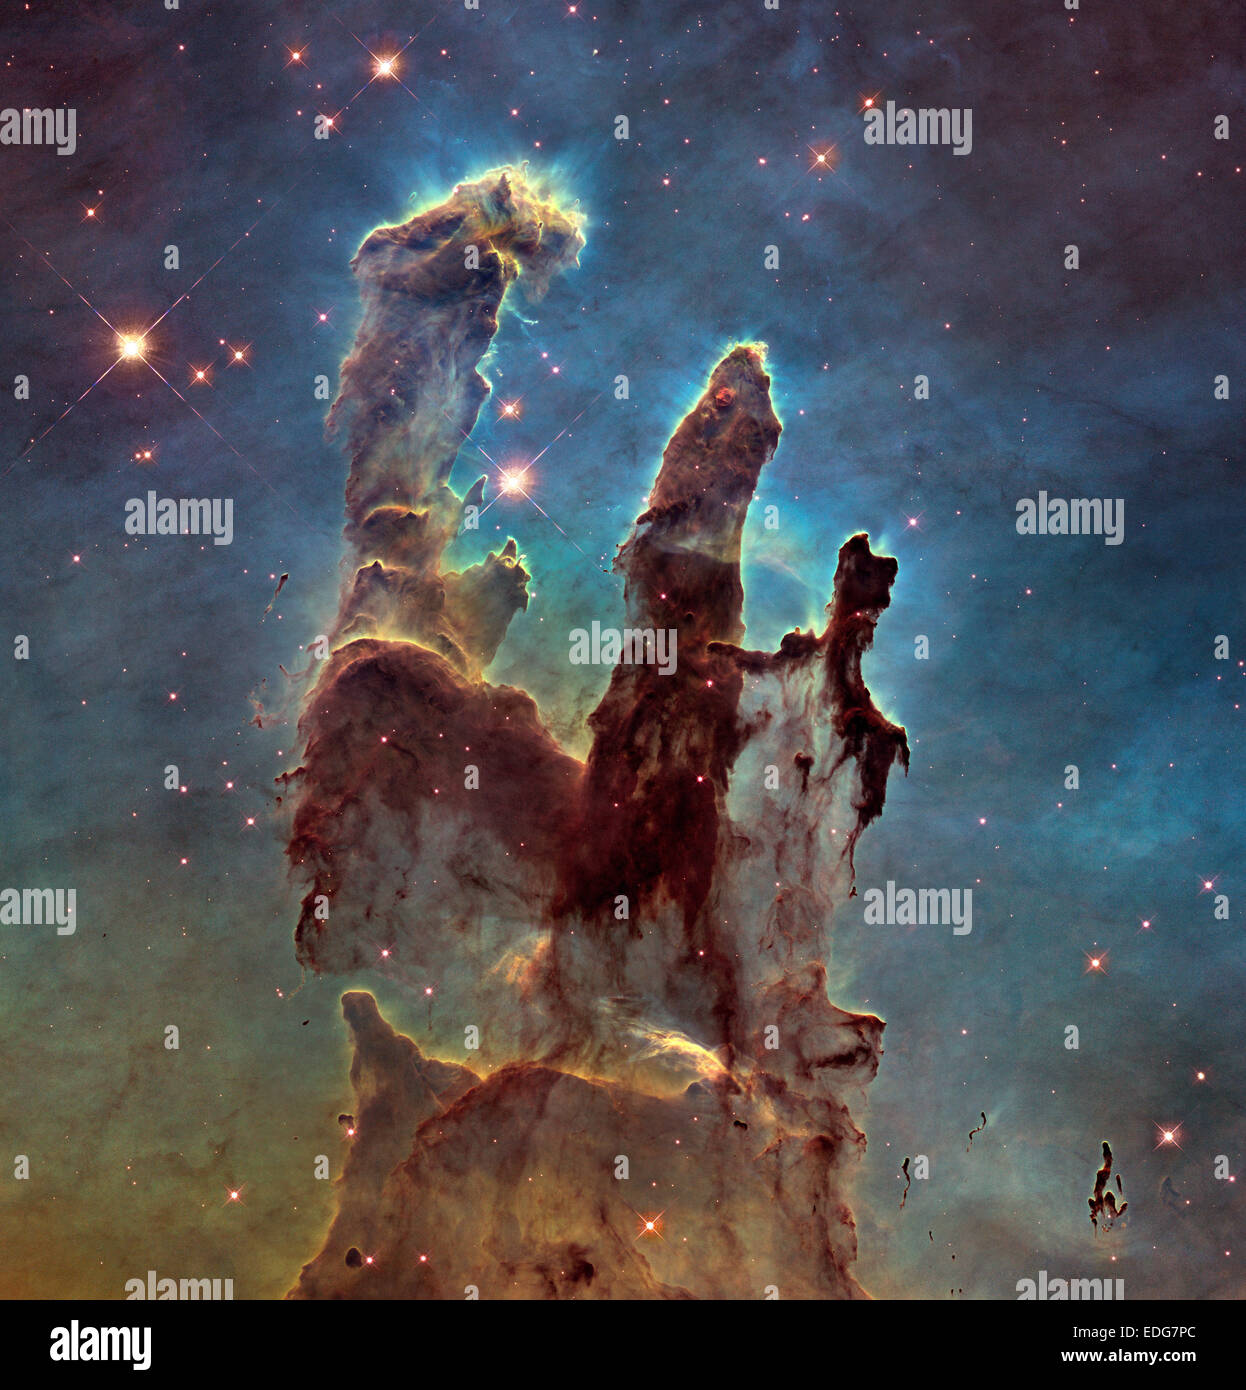 Säulen der Schöpfung vom Hubble-Teleskop. 5. Januar 2015. Hubble-Weltraumteleskop der NASA hat die berühmten Säulen der Schöpfung, schärfer und breiter Blick der Strukturen im Bild sichtbaren Licht revisited. Astronomen kombiniert mehrere Hubble-Aufnahmen um die größere Ansicht zu montieren. Die hoch aufragenden Säulen sind etwa 5 Lichtjahre groß. Die dunklen, fingerartige Funktion rechts unten möglicherweise eine kleinere Version der riesigen Säulen. Das neue Bild wurde mit Hubble vielseitig und scharfsinniger breites Feld Kamera drei 5. Januar 2015 aufgenommen. Bildnachweis: Planetpix/Alamy Live-Nachrichten Stockfoto